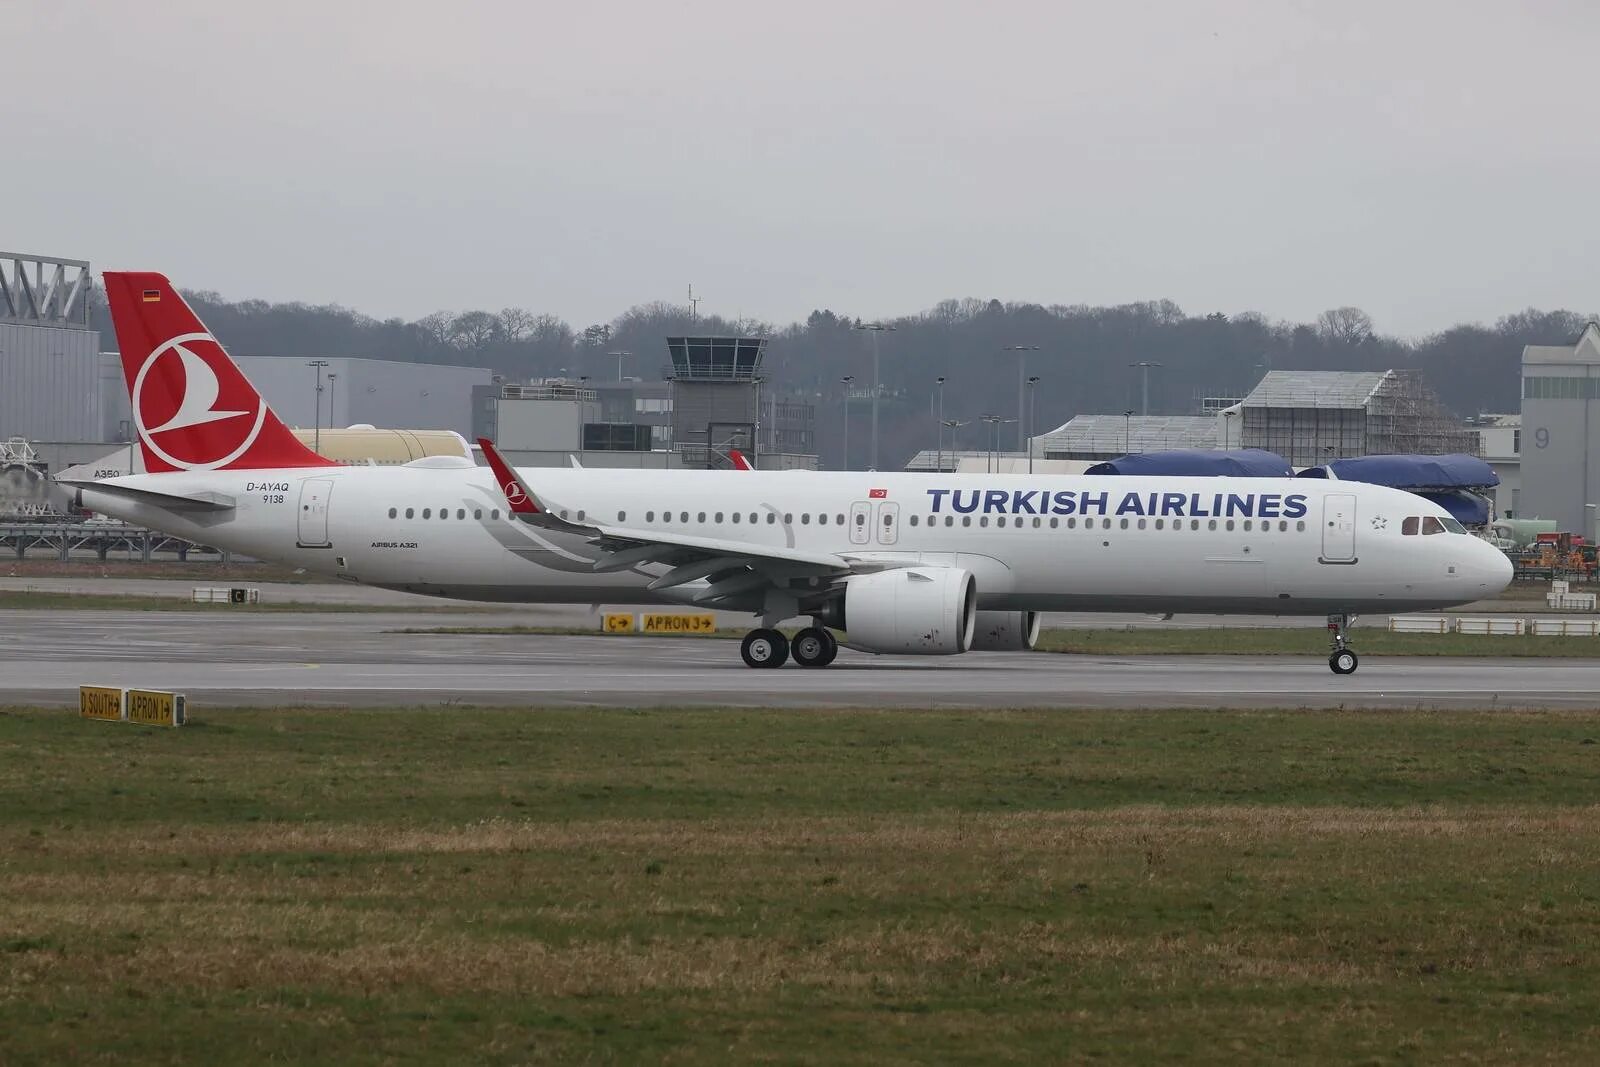 Туркиш эйрлайнс отзывы. Airbus a321 турецкие авиалинии. A321-271nx. Туркиш лайн Airbus a321-200. А321-271.